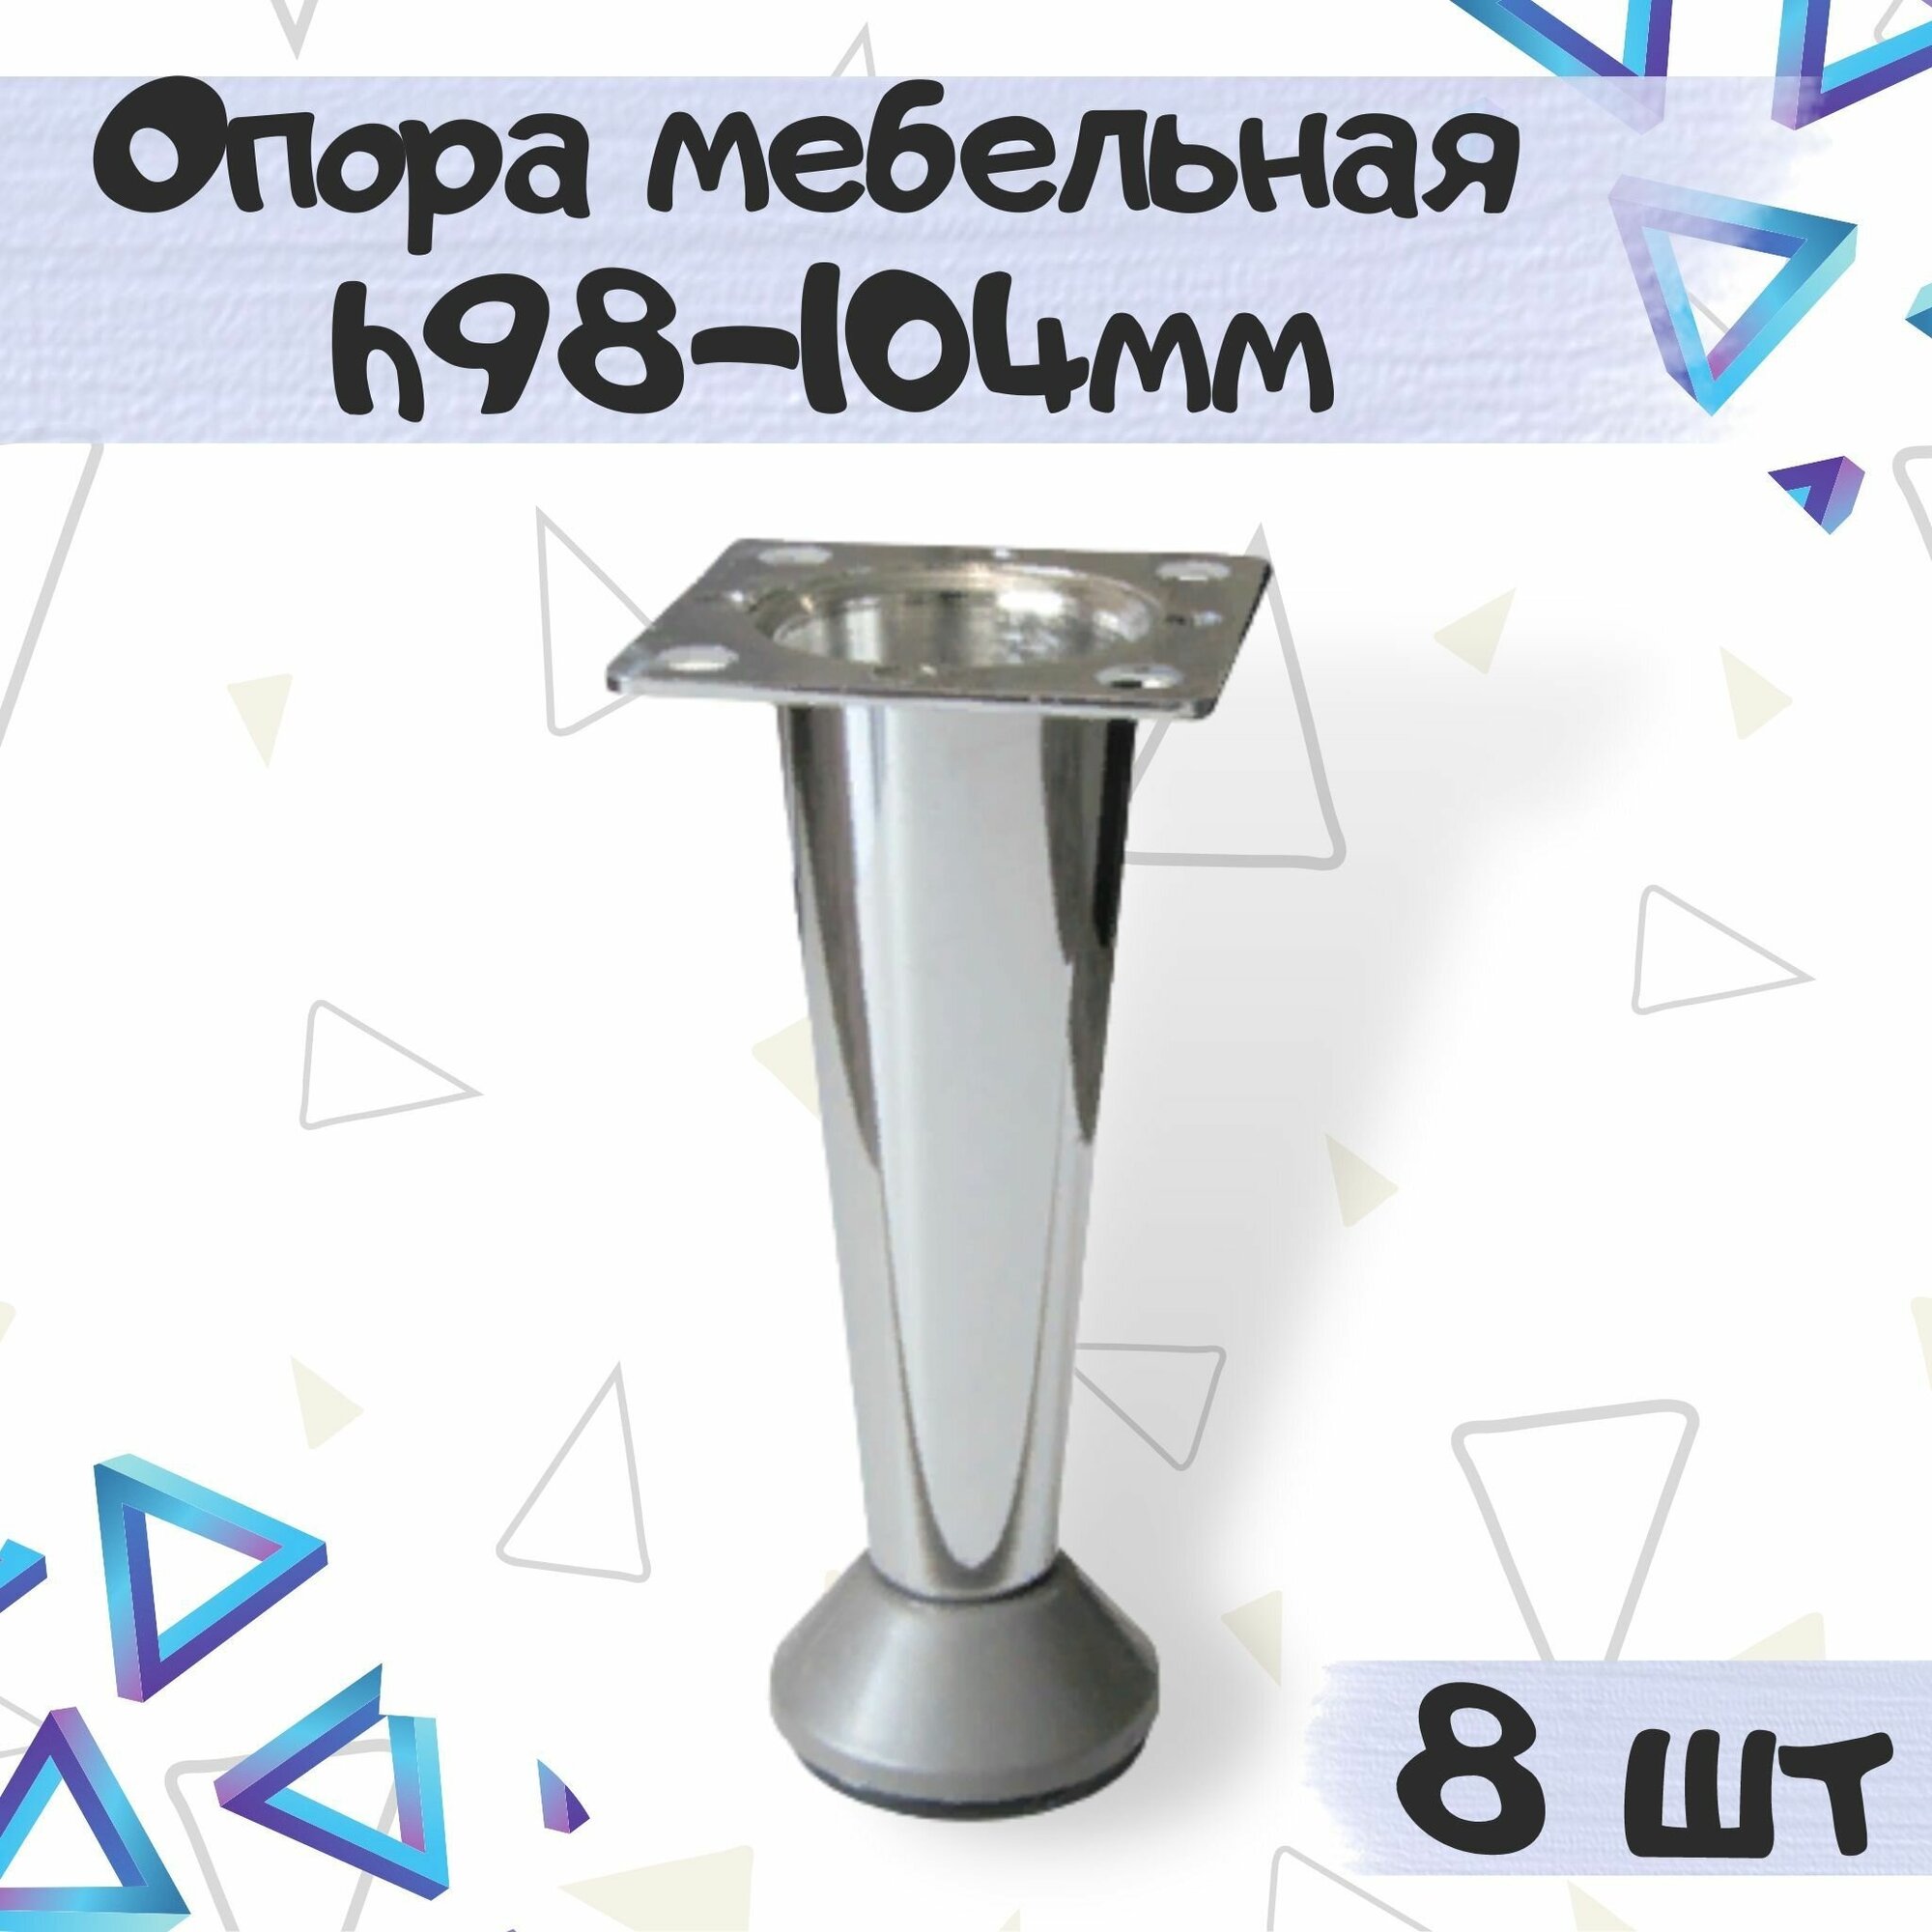 Опора-ножка декоративная мебельная в форме конуса h-98-104 мм цвет - под нержавеющую сталь 8 шт.